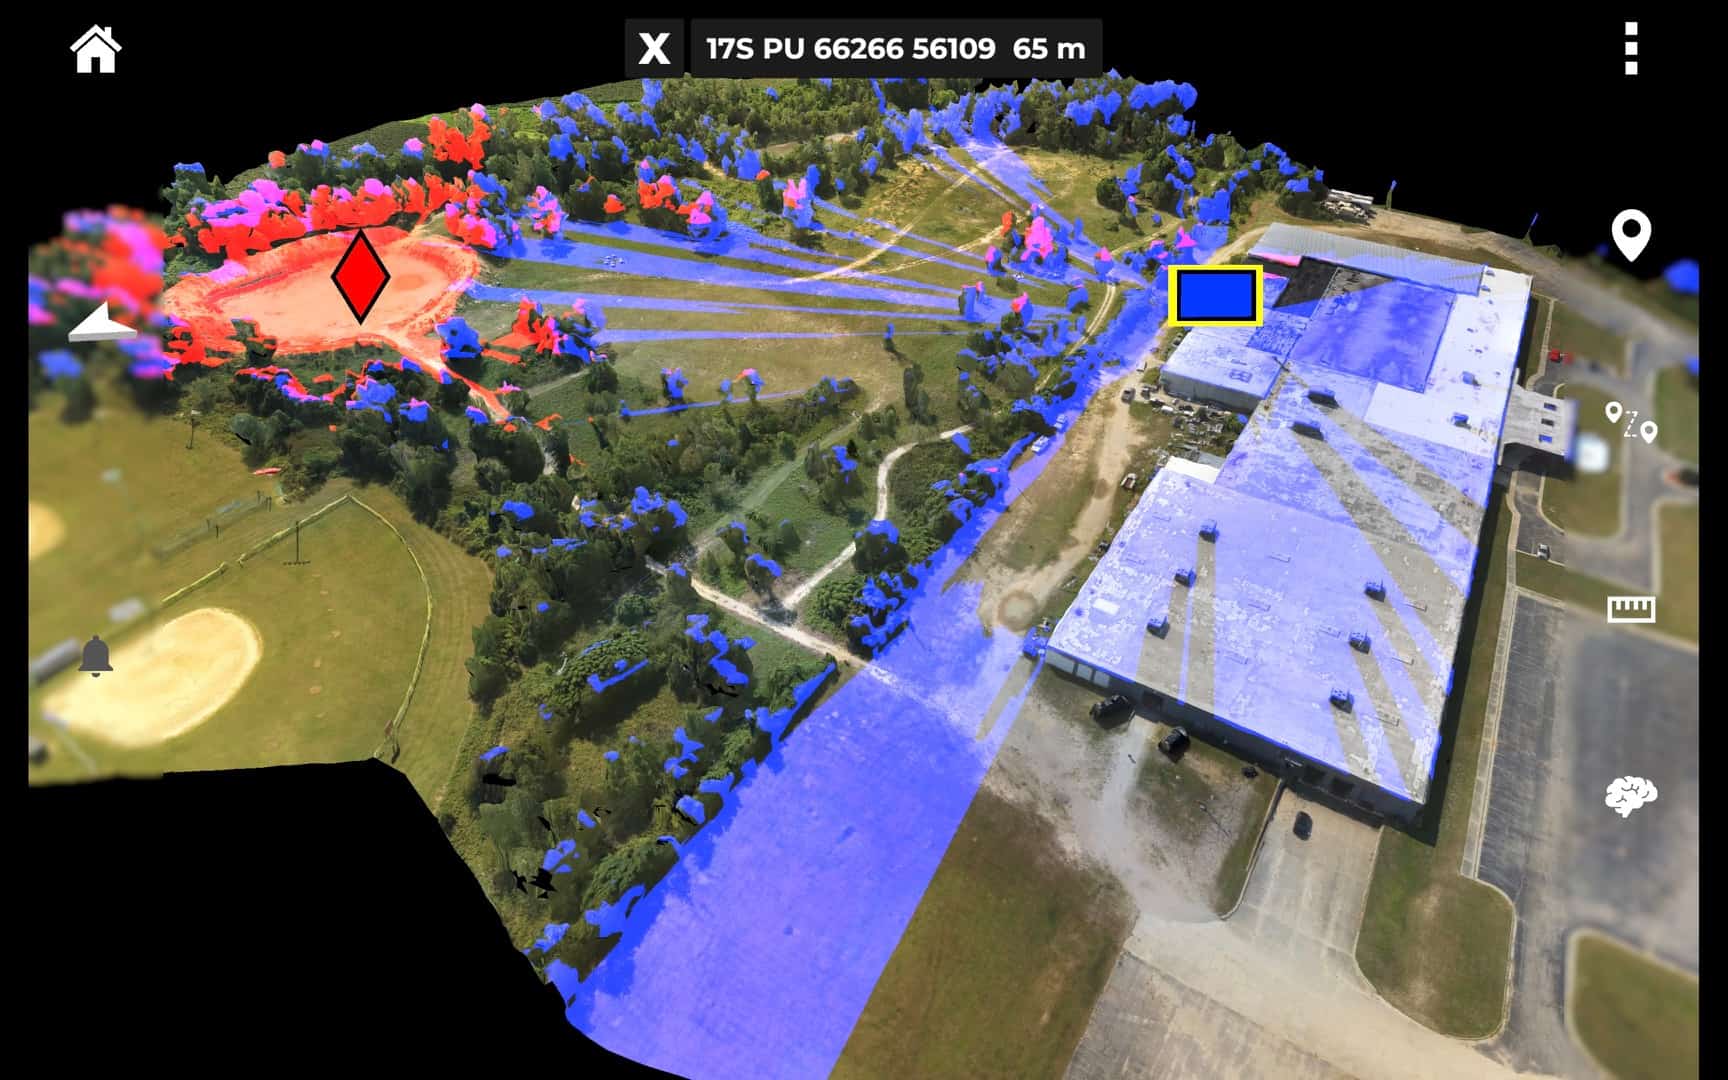 由多船金鹰飞行创建的远景模型，显示敌人(红色)和友军(蓝色)的位置和各自的视线。这张照片是在布拉格堡附近向美国陆军特种作战司令部成员进行演示时拍摄的。